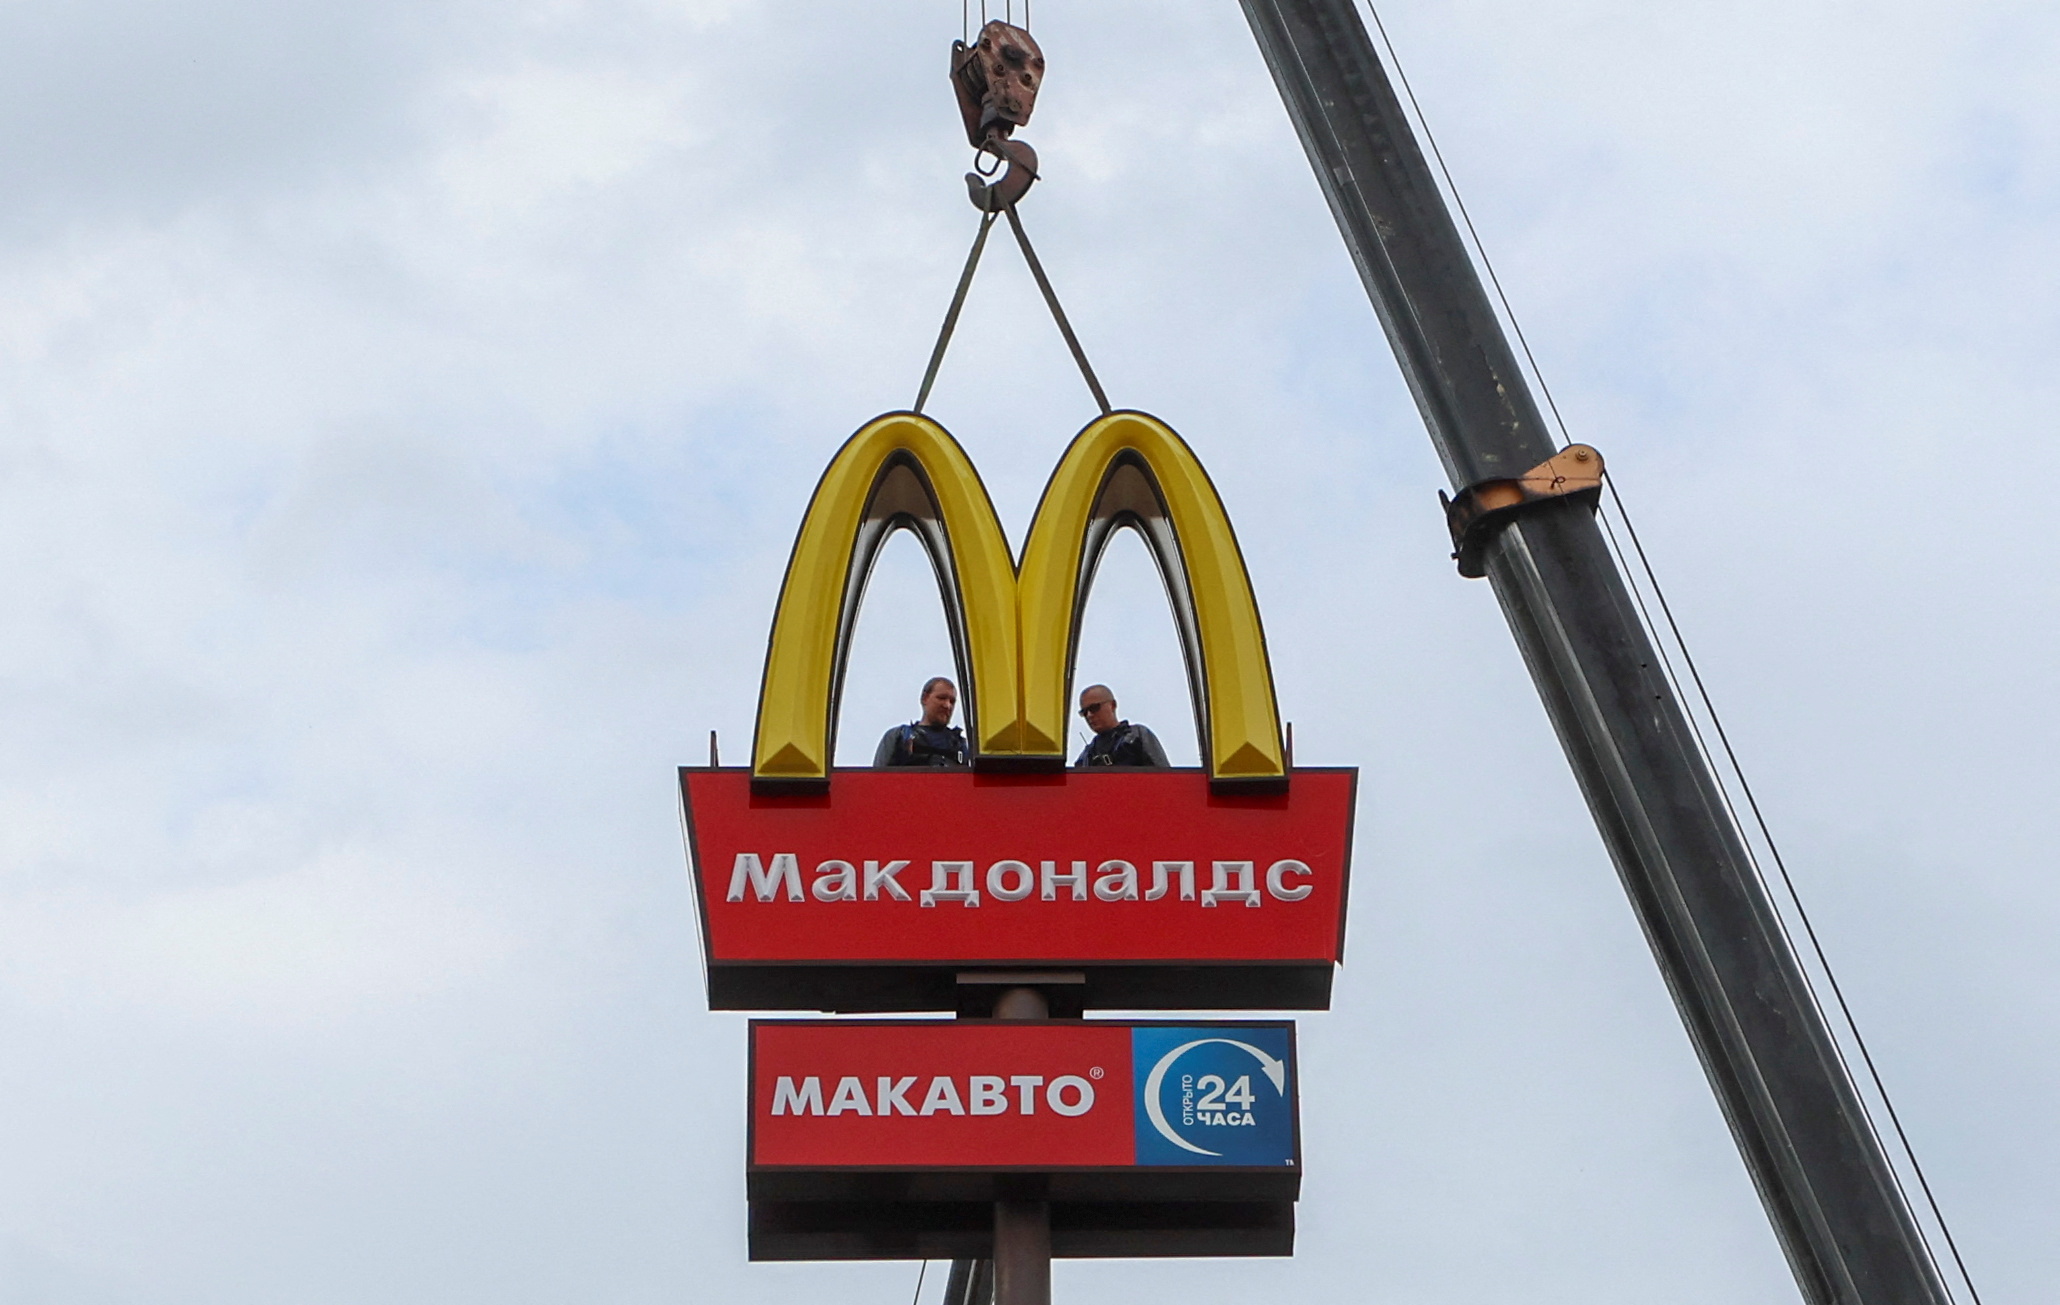 Des McDonald's russes sans 